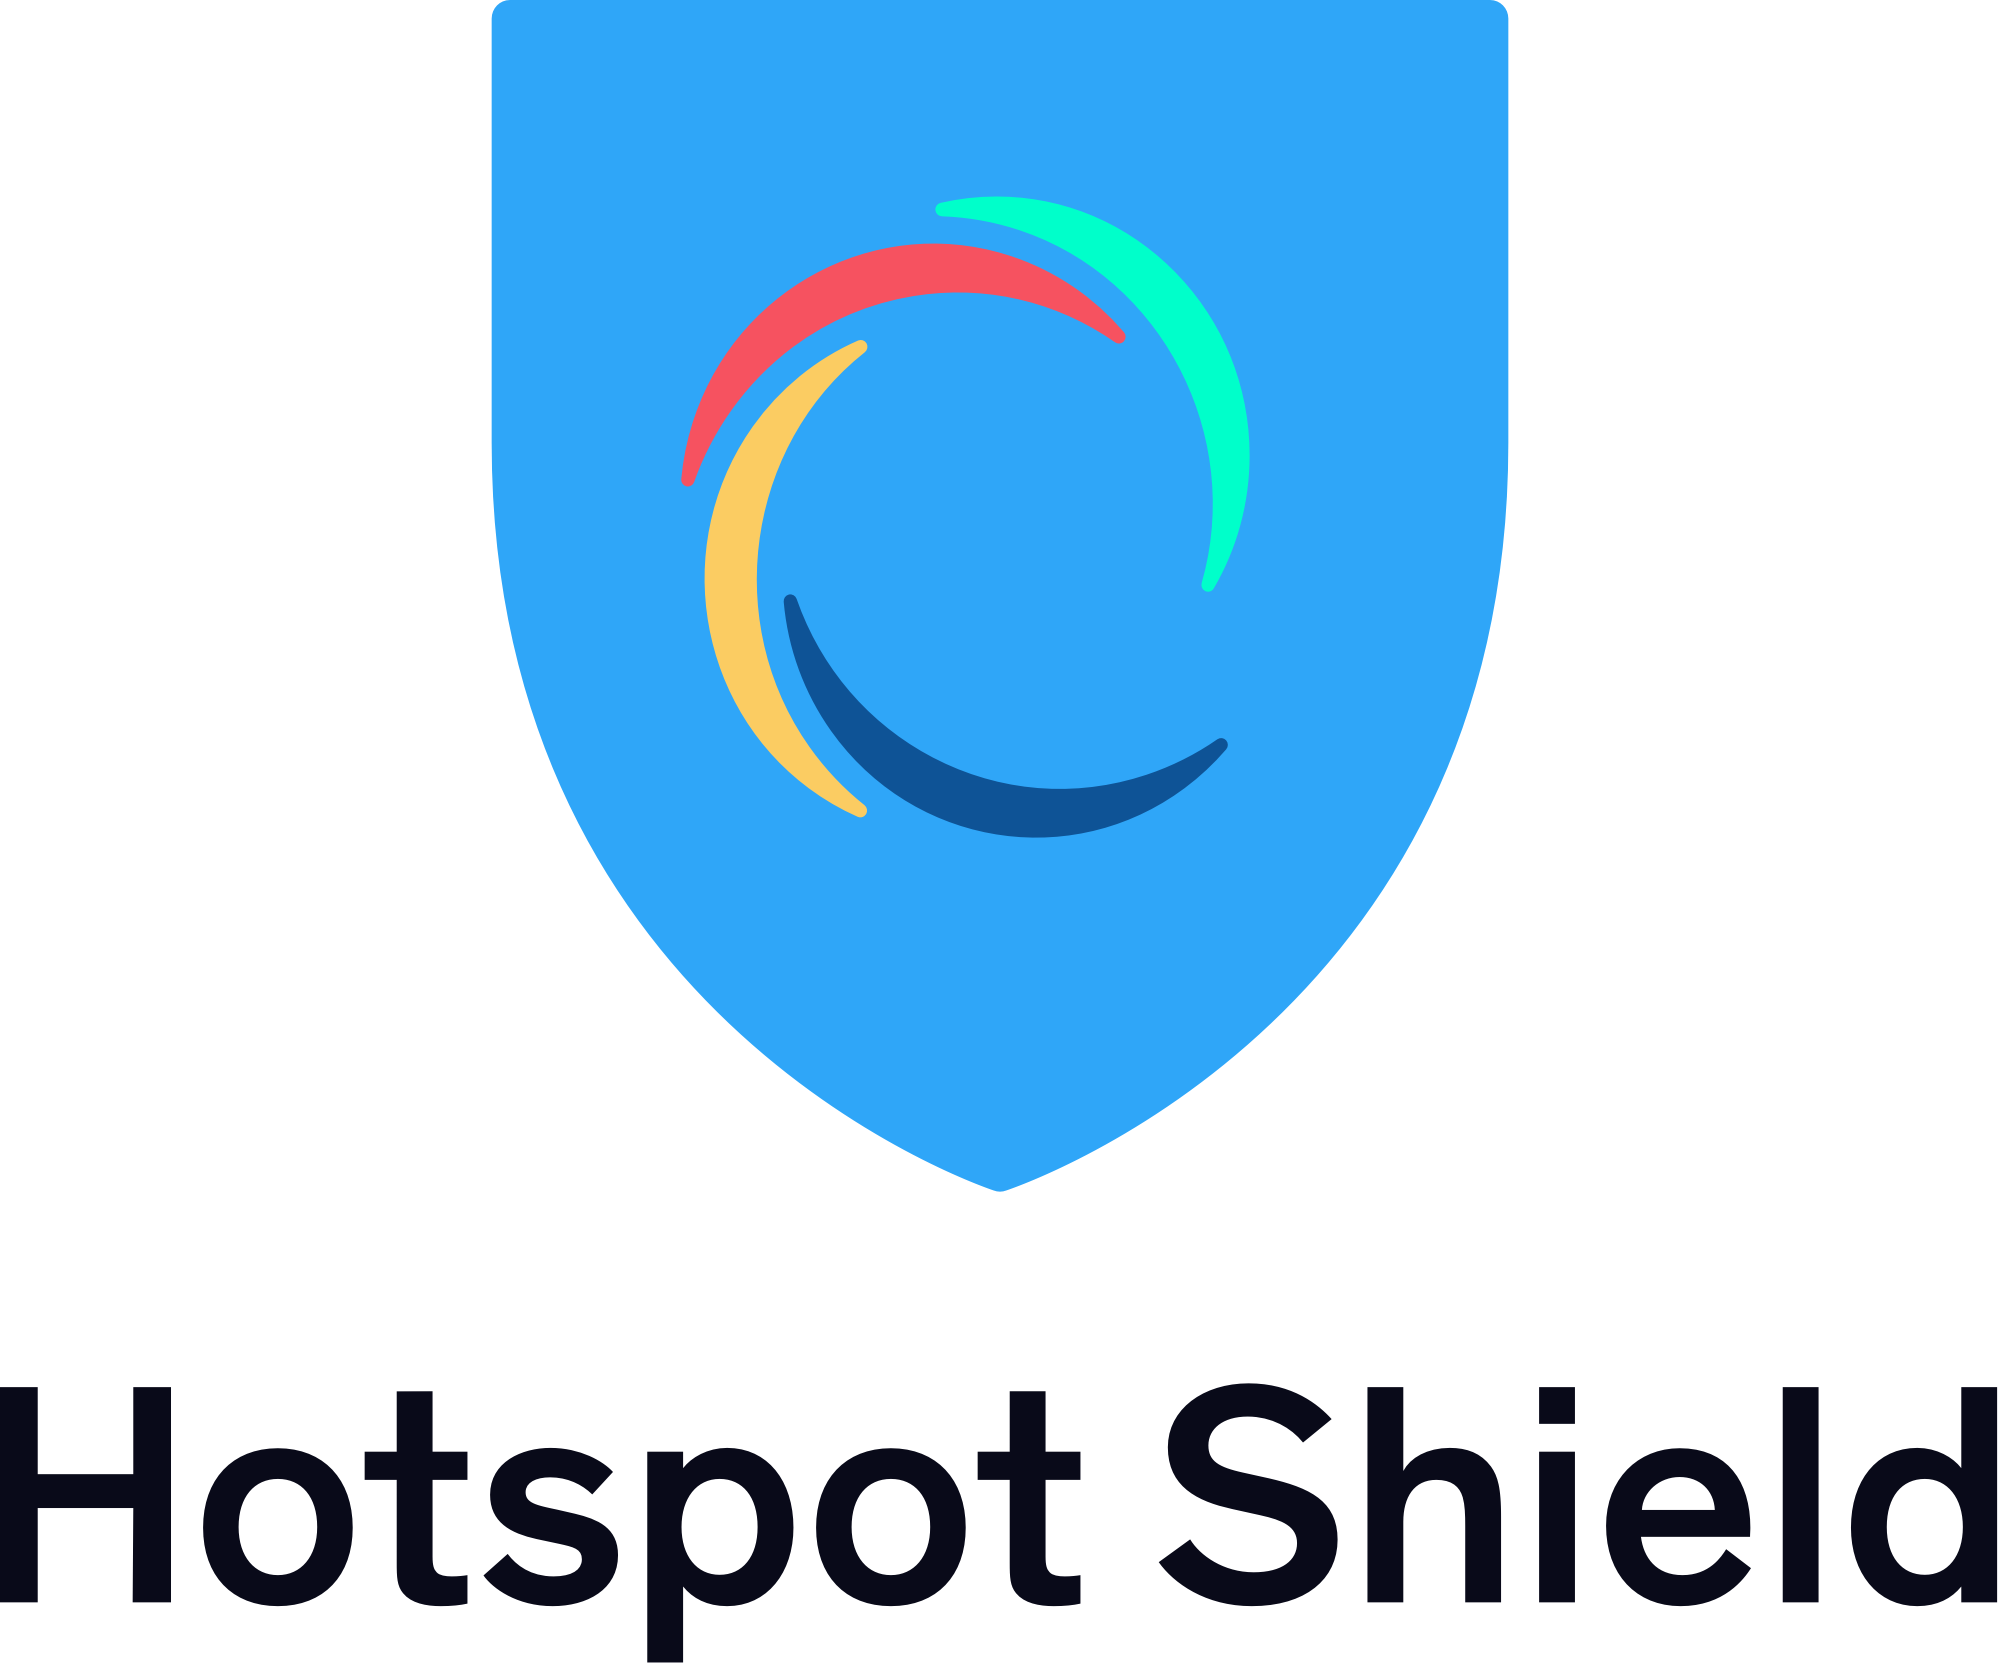 Hotspot-Shield-Crack-7.20.9-VPN-Elite-2019-With-Keygen-Download1